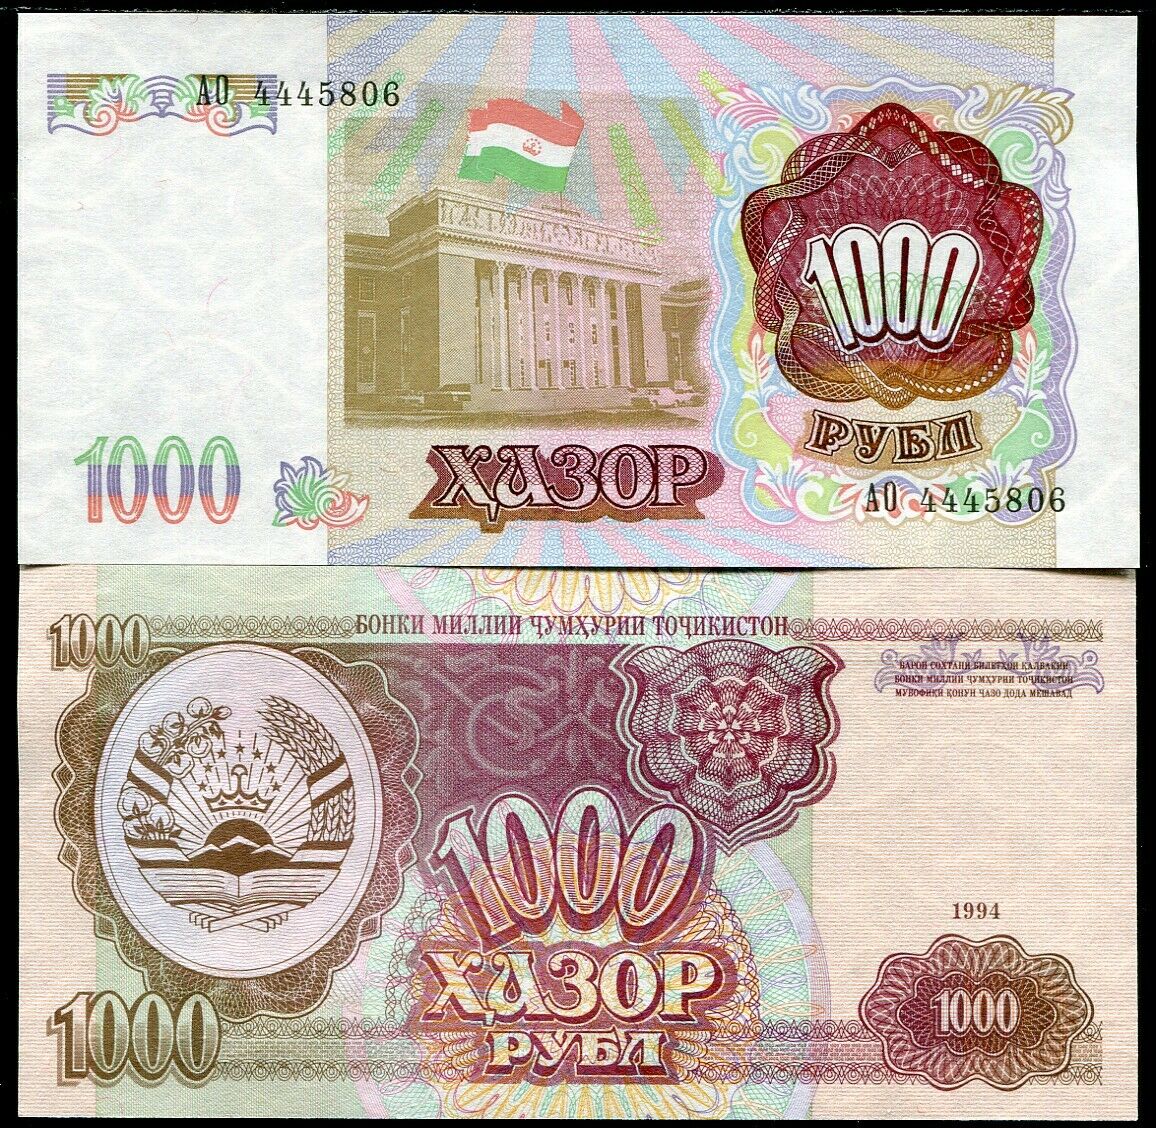 Tajikistan 1000 Rubles 1994 P 9 AUNC ABOUT UNC